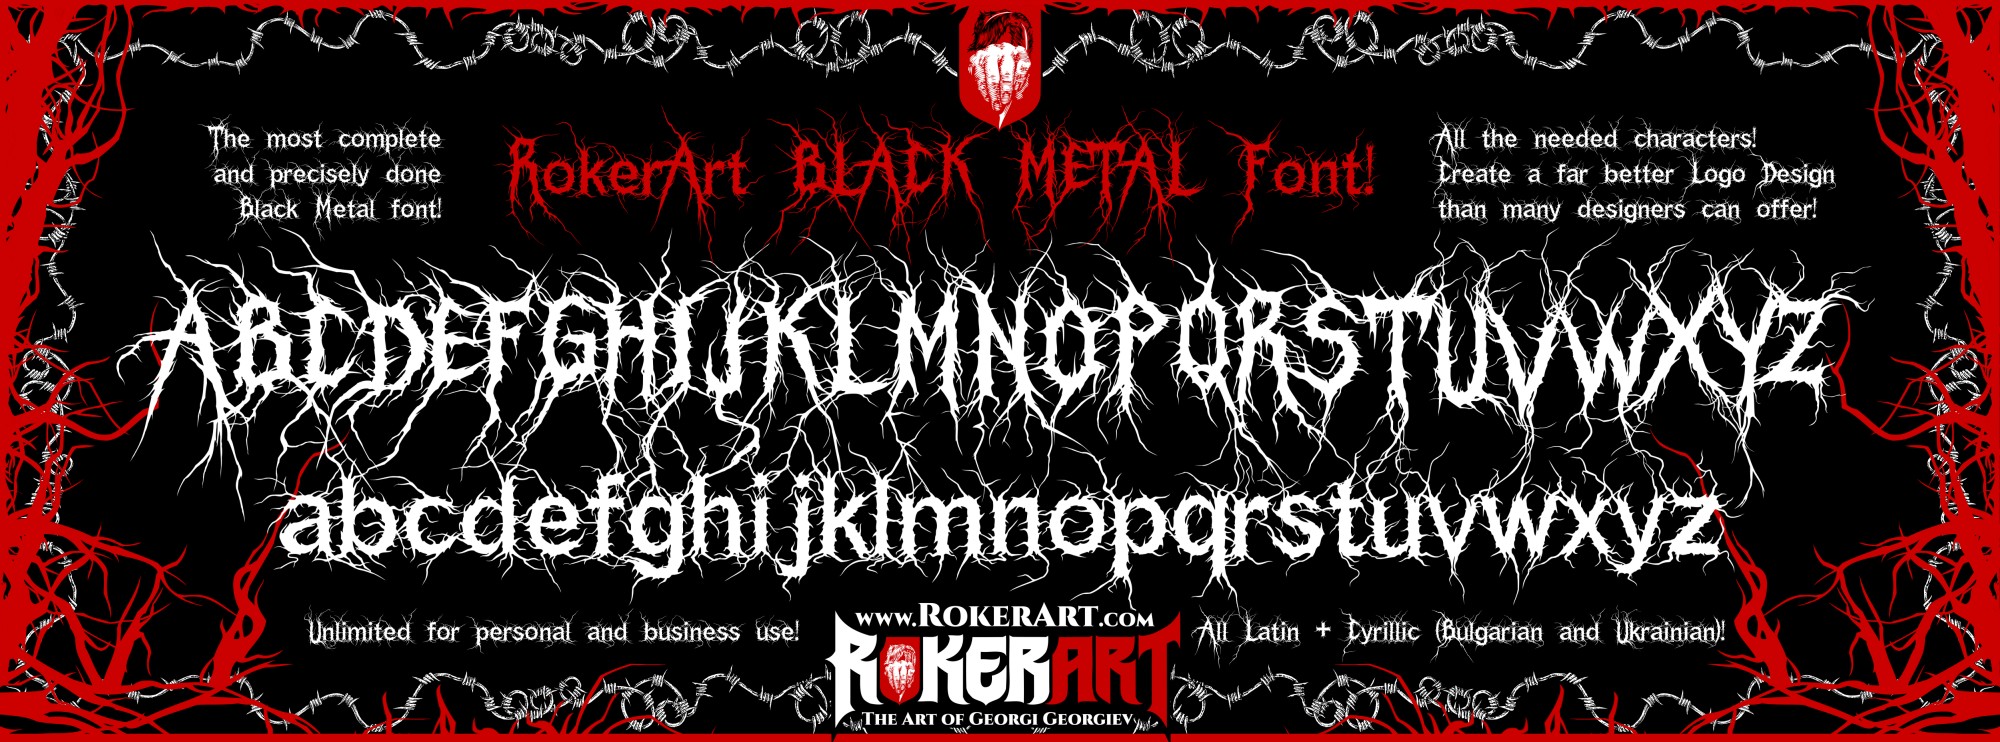 Black Metal Custom Font